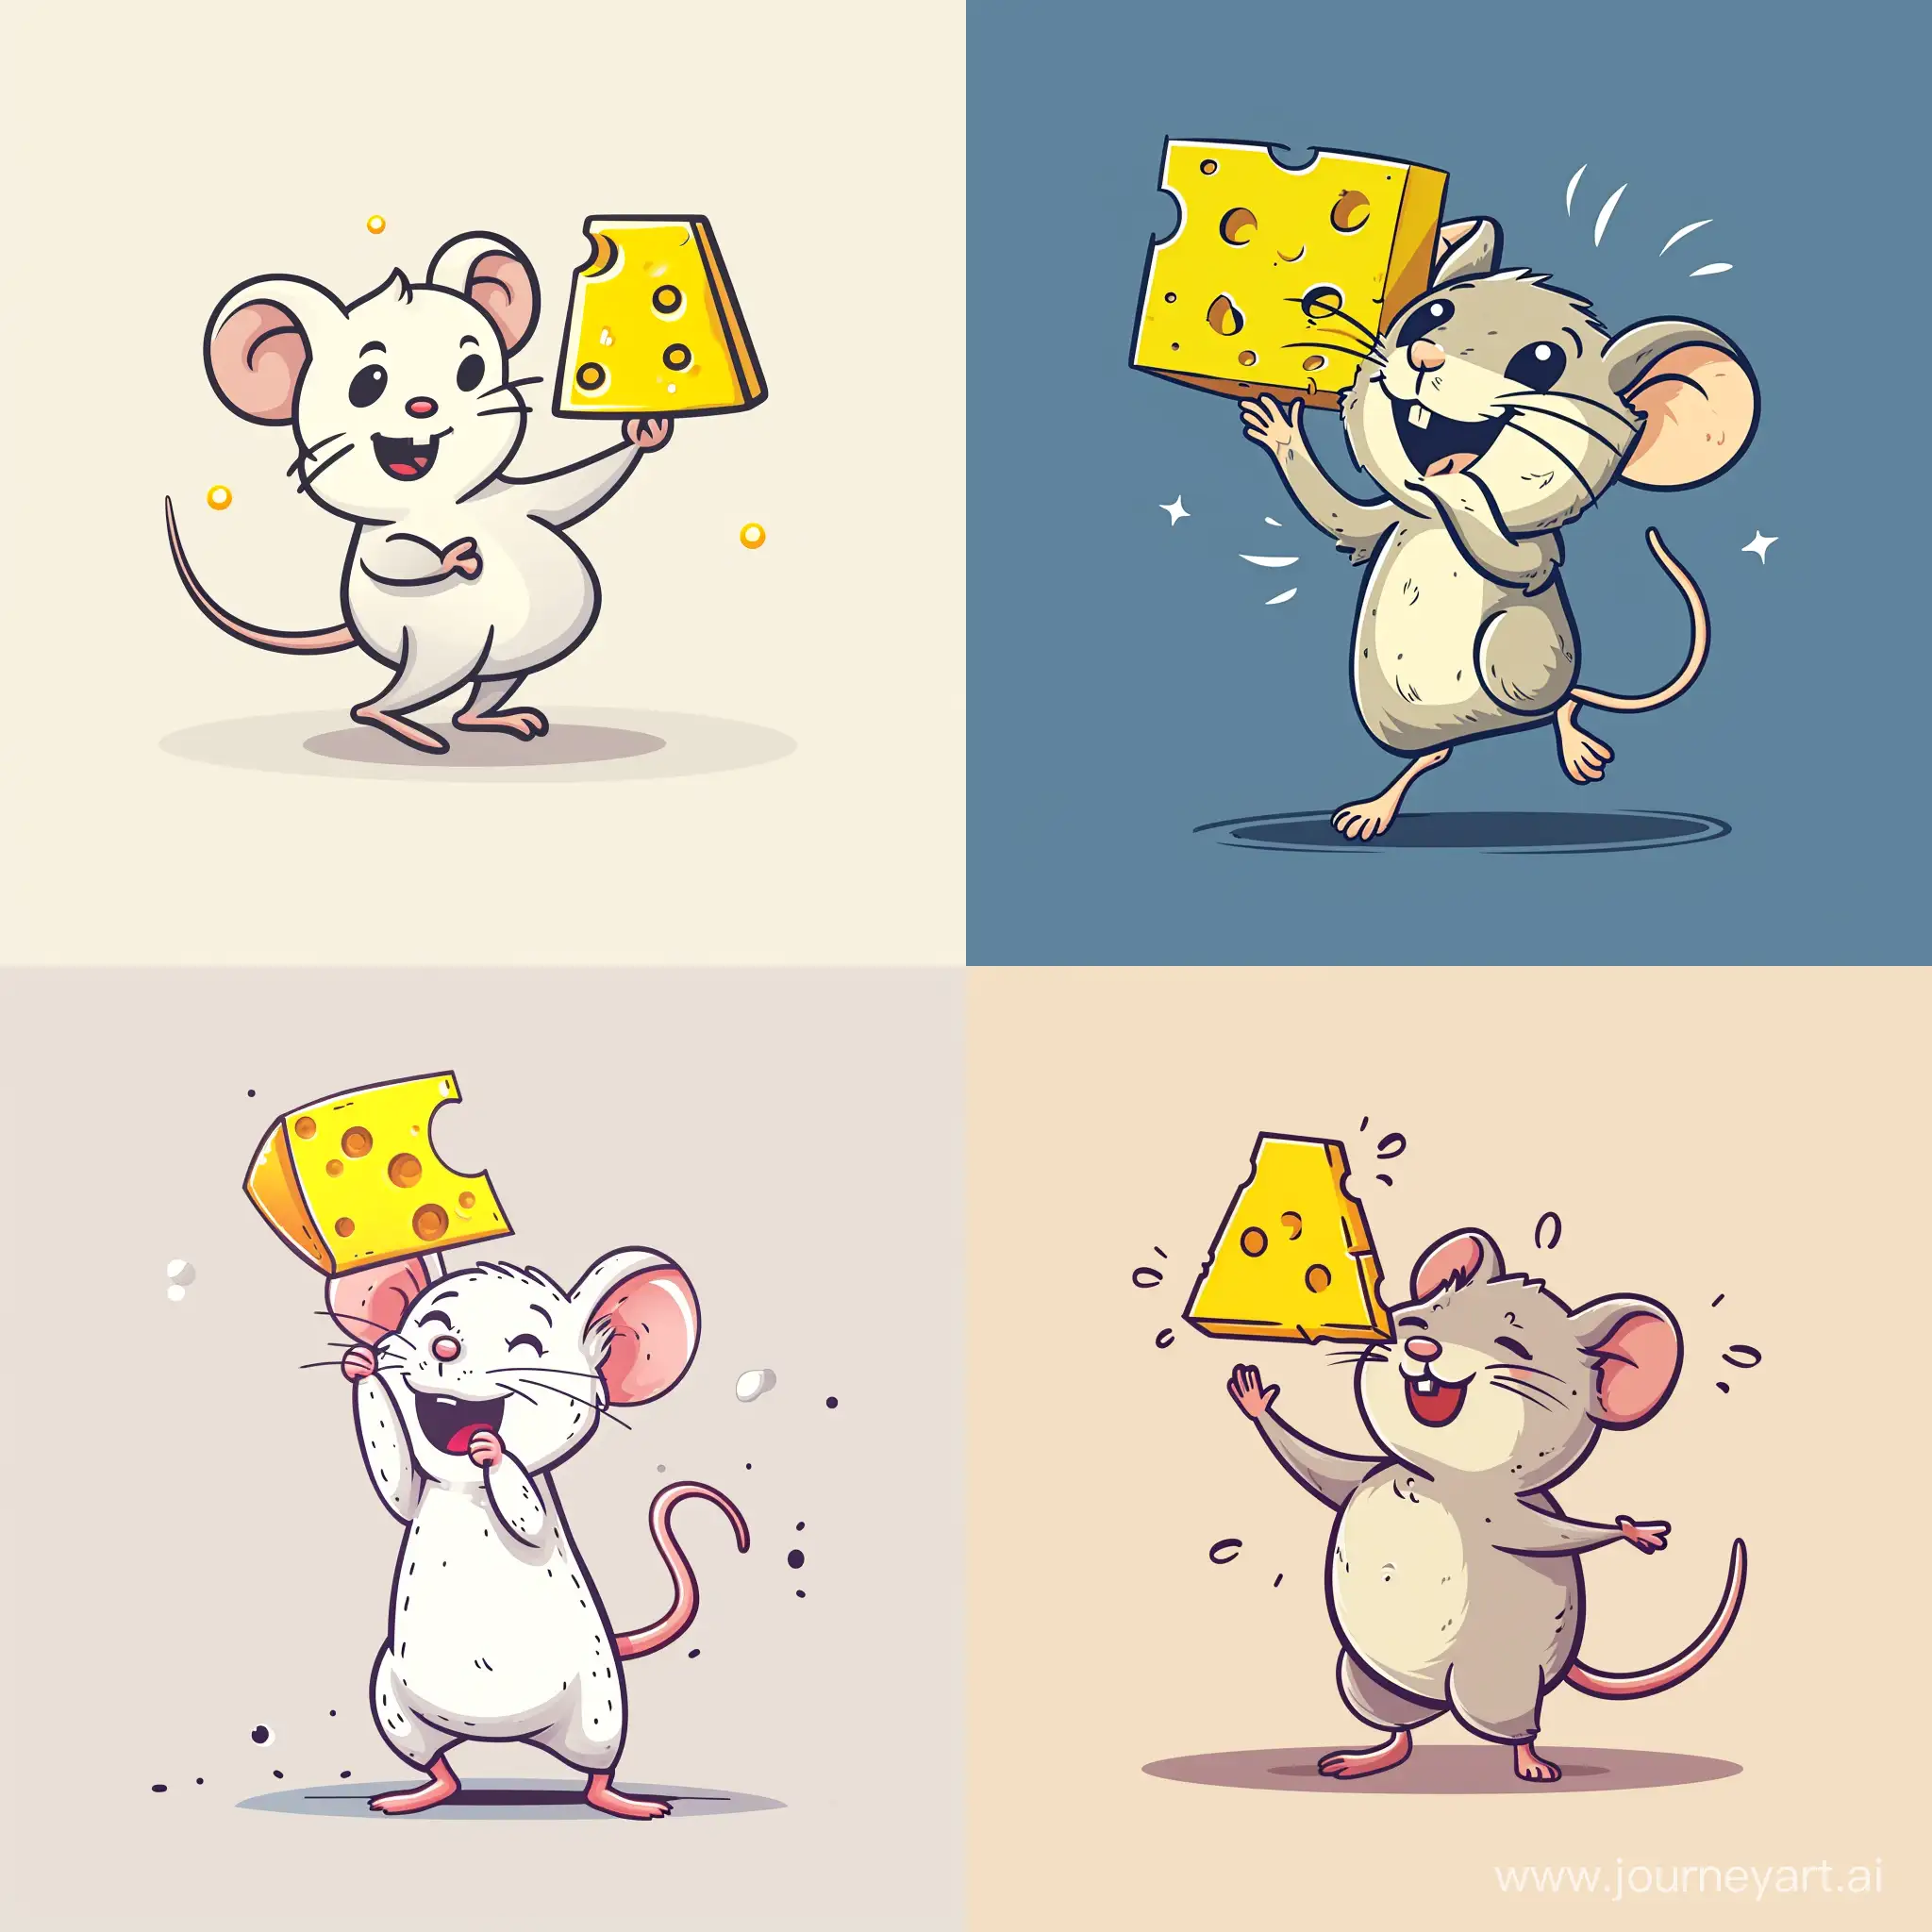 一只老鼠找到了一个黄色奶酪，高兴的举着奶酪跳起来，极简线条，卡通风格，设计师Seiji Matsumoto